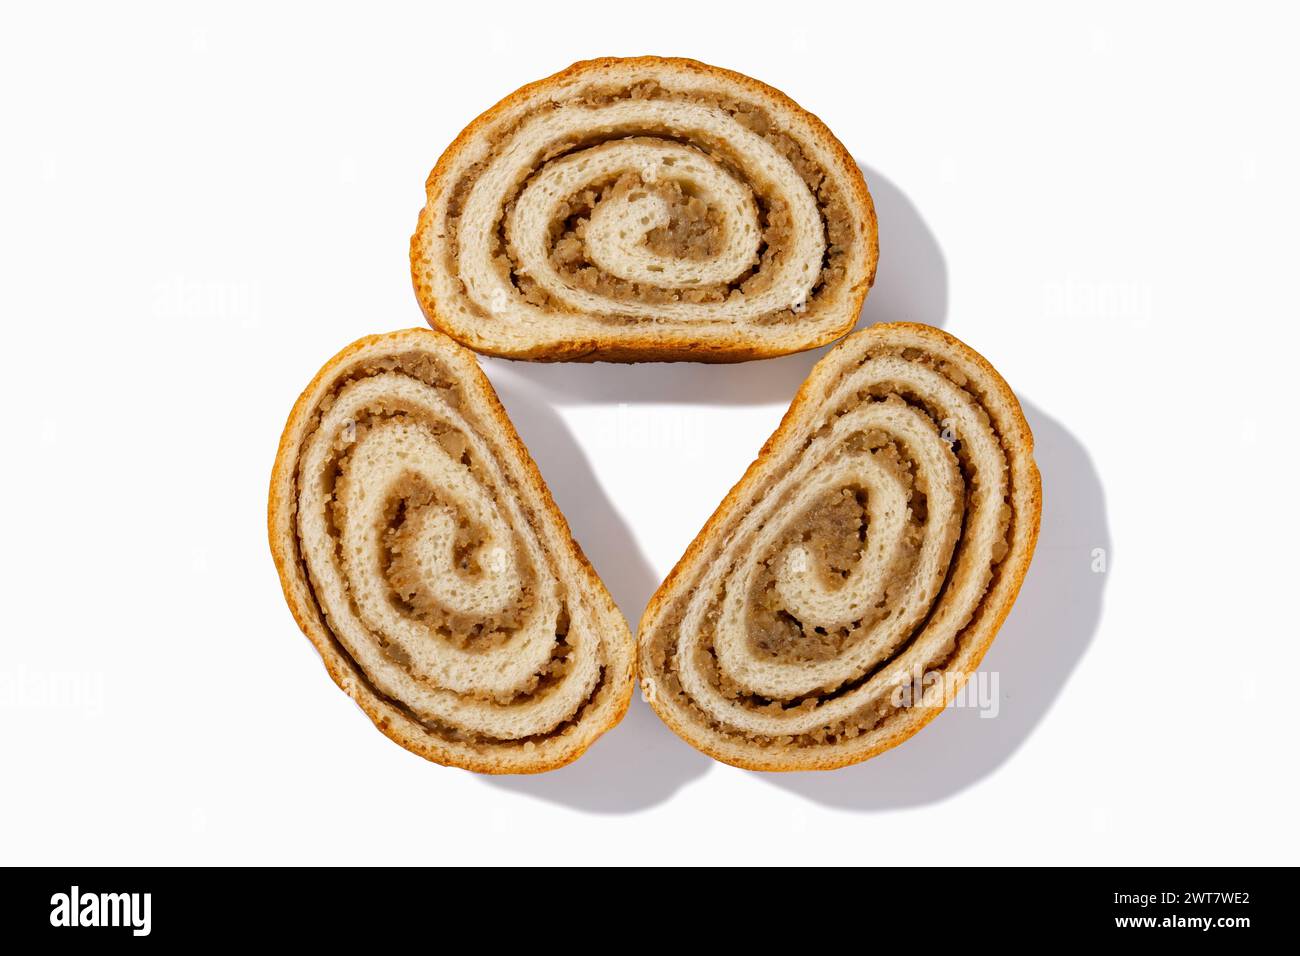 Dégustez trois tranches de pain aux noix allemandes, chacune avec des noix croquantes et une croûte dorée, sur fond blanc immaculé Banque D'Images